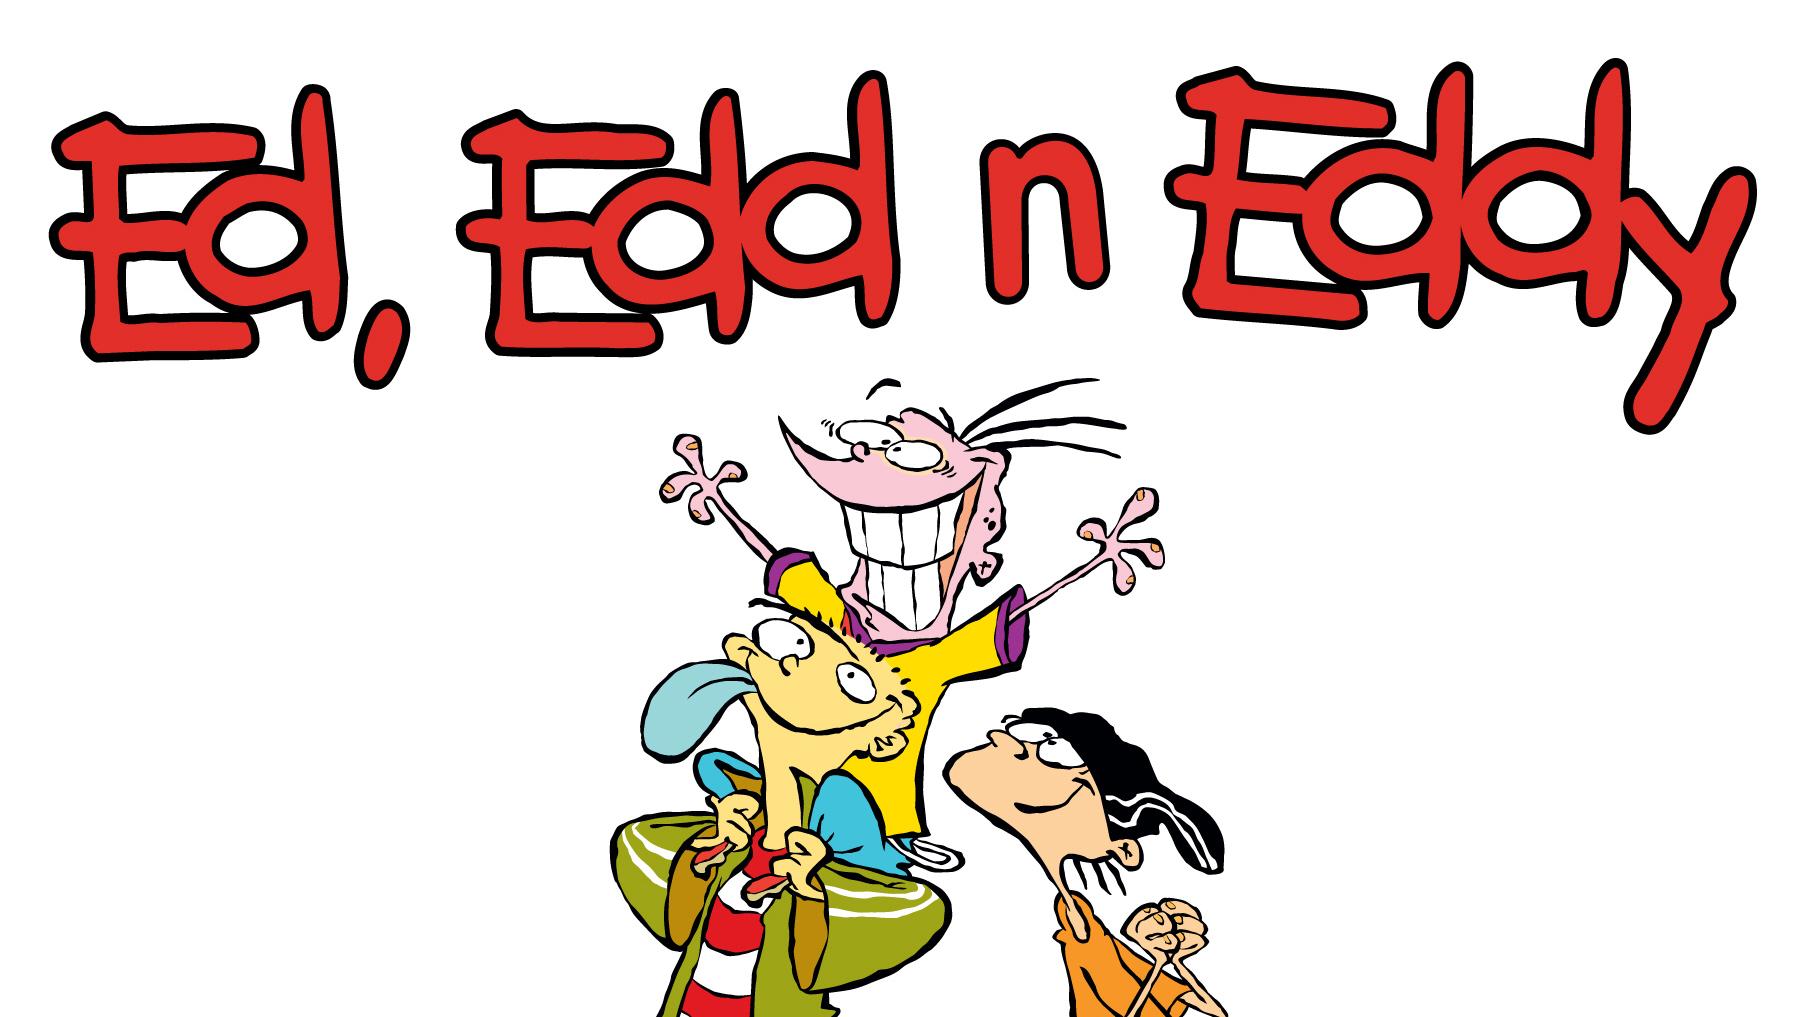 ed edd n eddy episodes wish you were ed